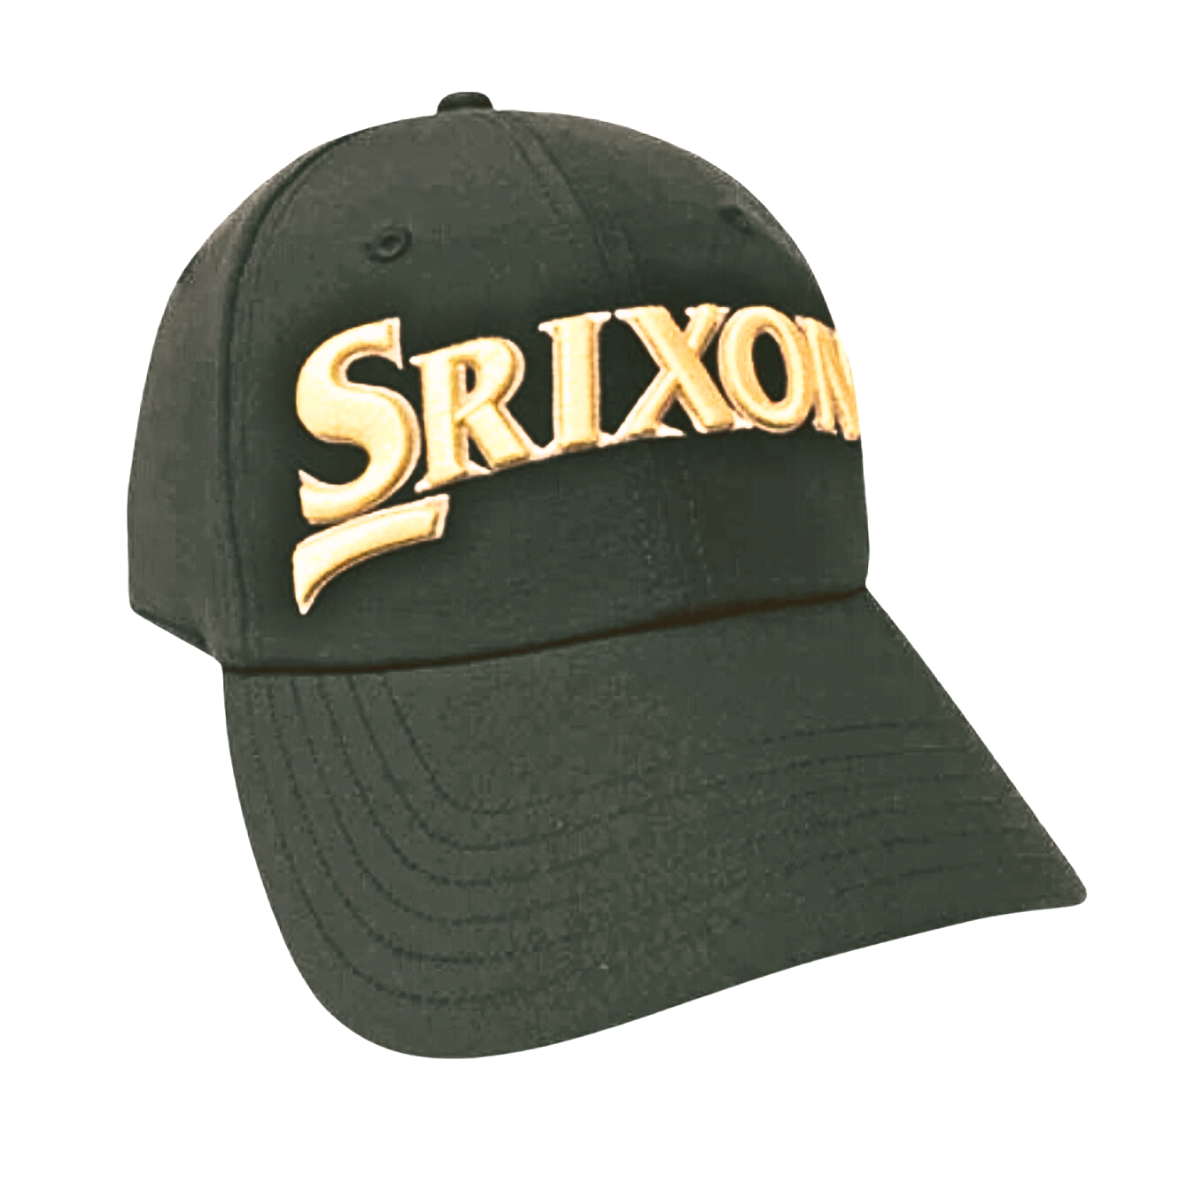 Srixon Lite Weight Golf Cap